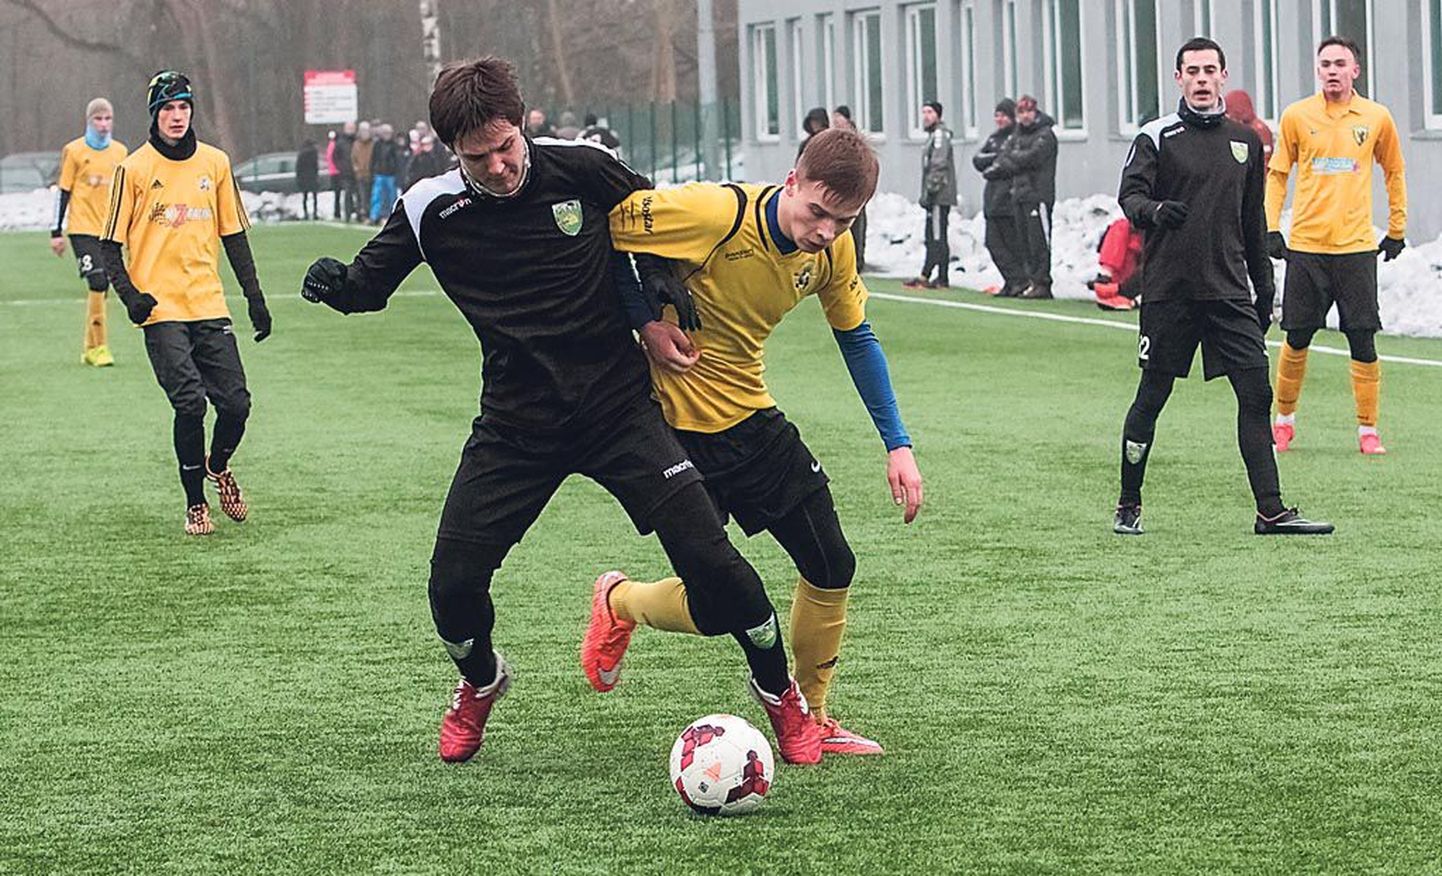 Eelmisel laupäeval sai Pärnu linnameeskond oma hooajaeelses seitsmendas treeningmängus 3:0 jagu kohalikust rivaalist Vändra Vaprusest.